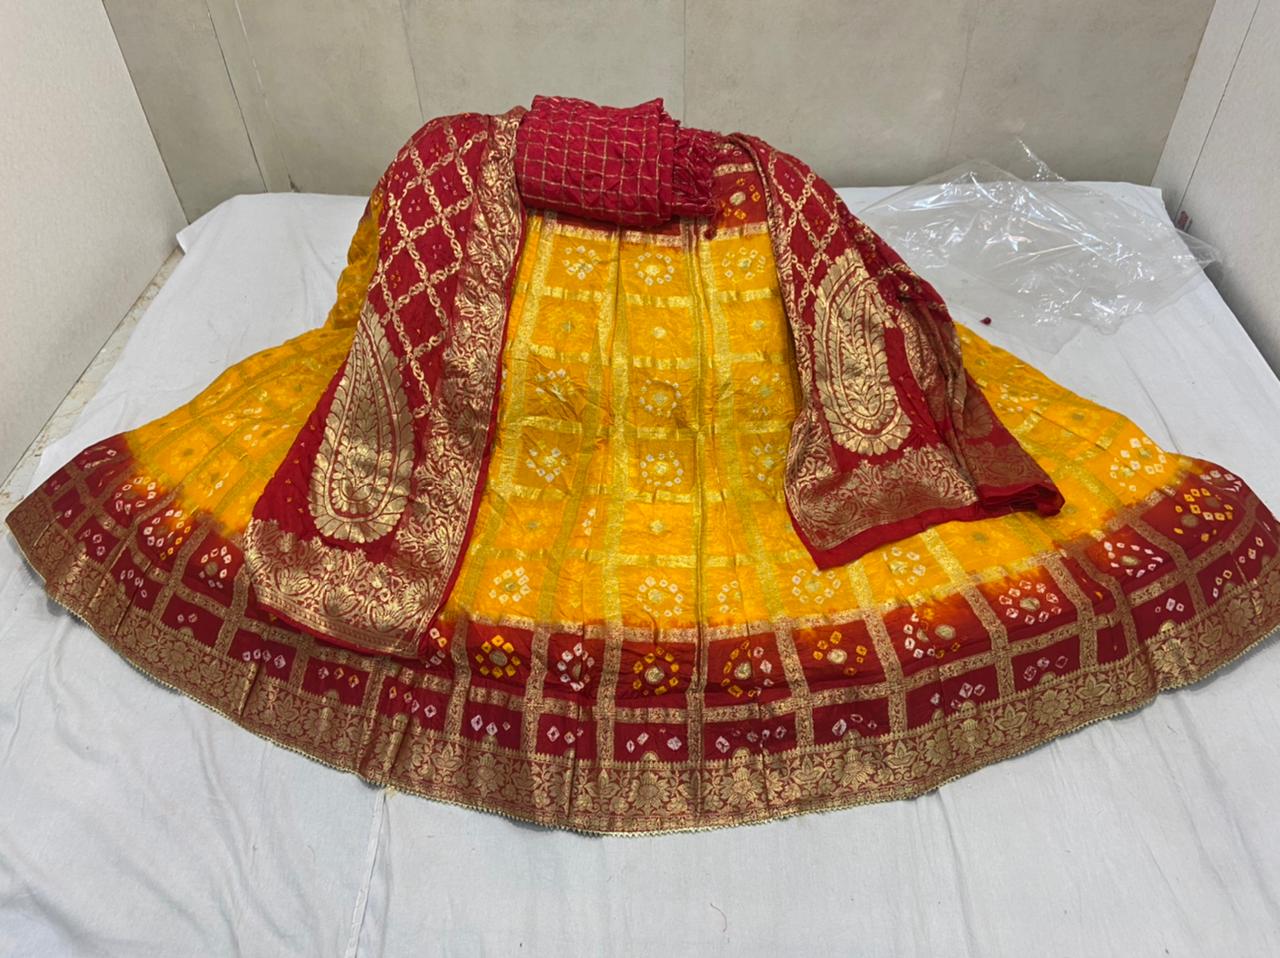 Chanderi Semi-stitched Rajasthani Bridal Lehnga at Rs 22000 in New Delhi